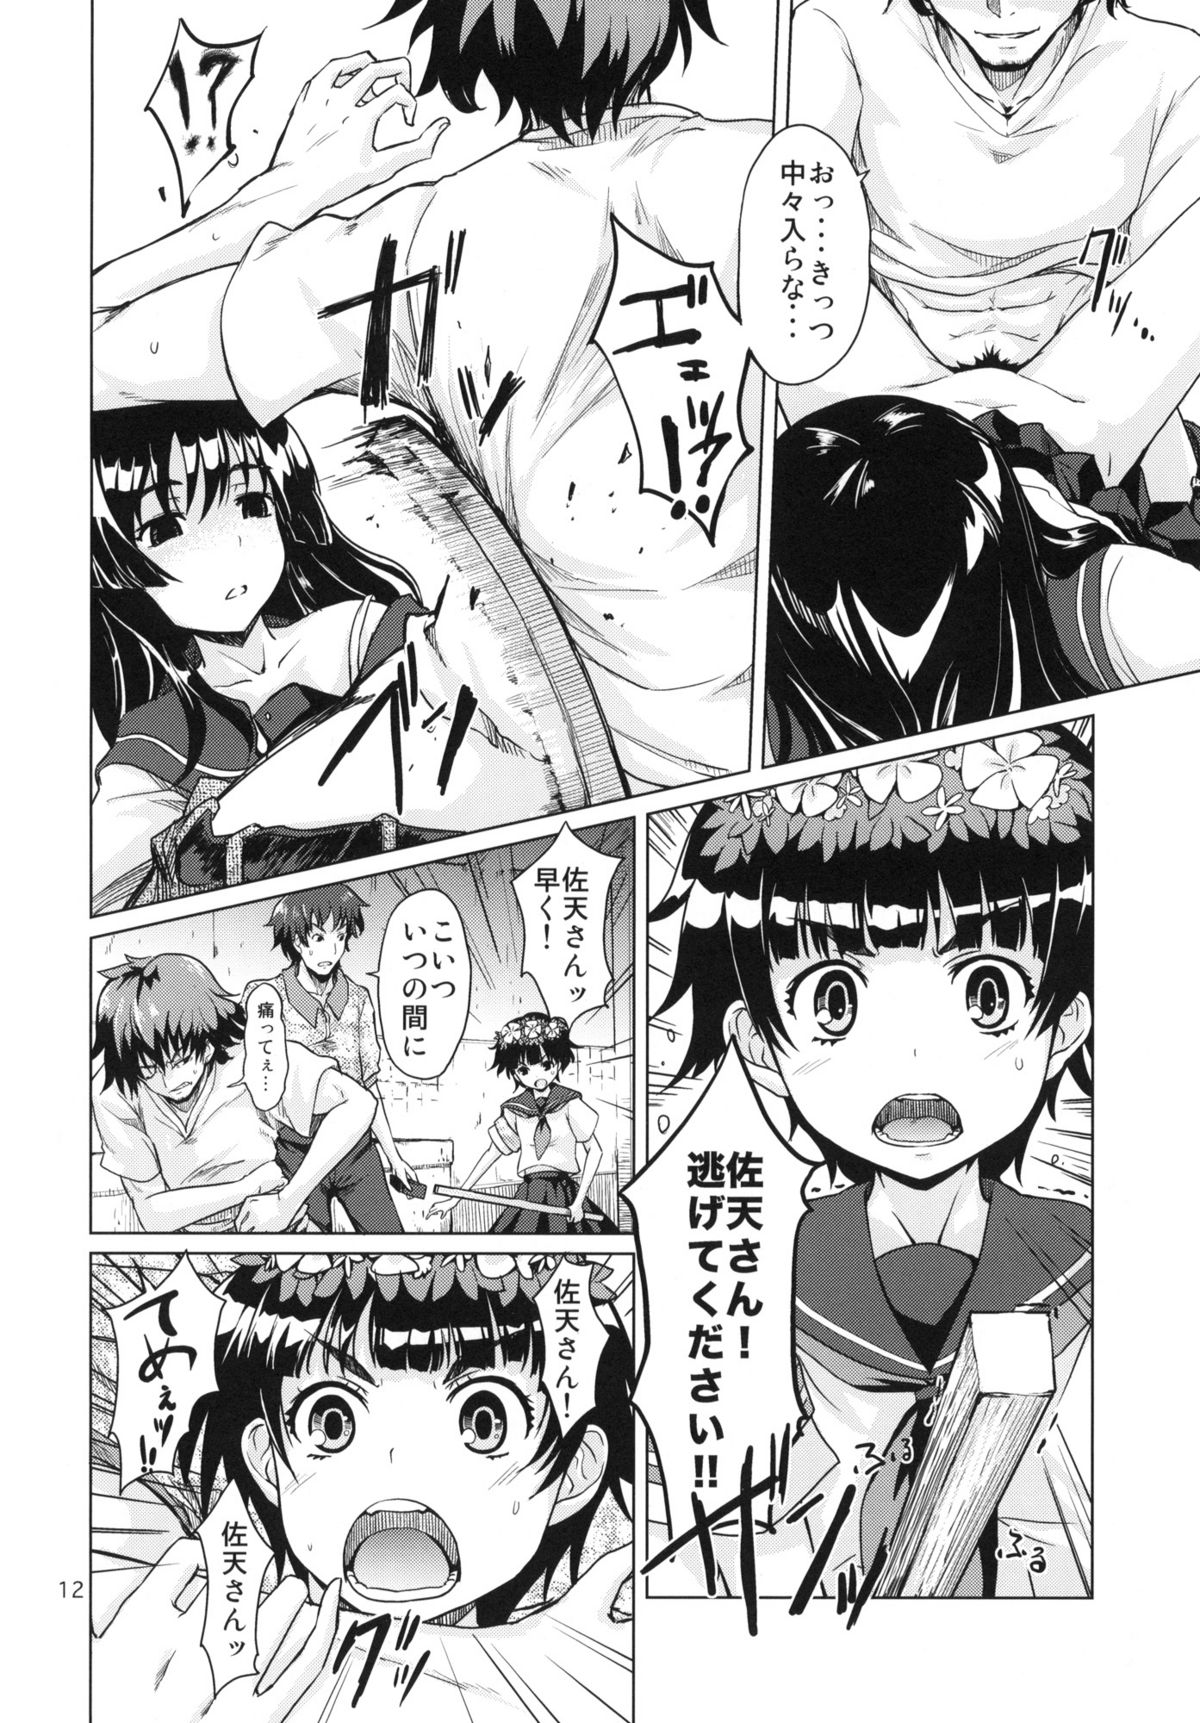 [MMU2000 (Mishima Hiroji)] i.Saten (Toaru Kagaku no Railgun) page 13 full